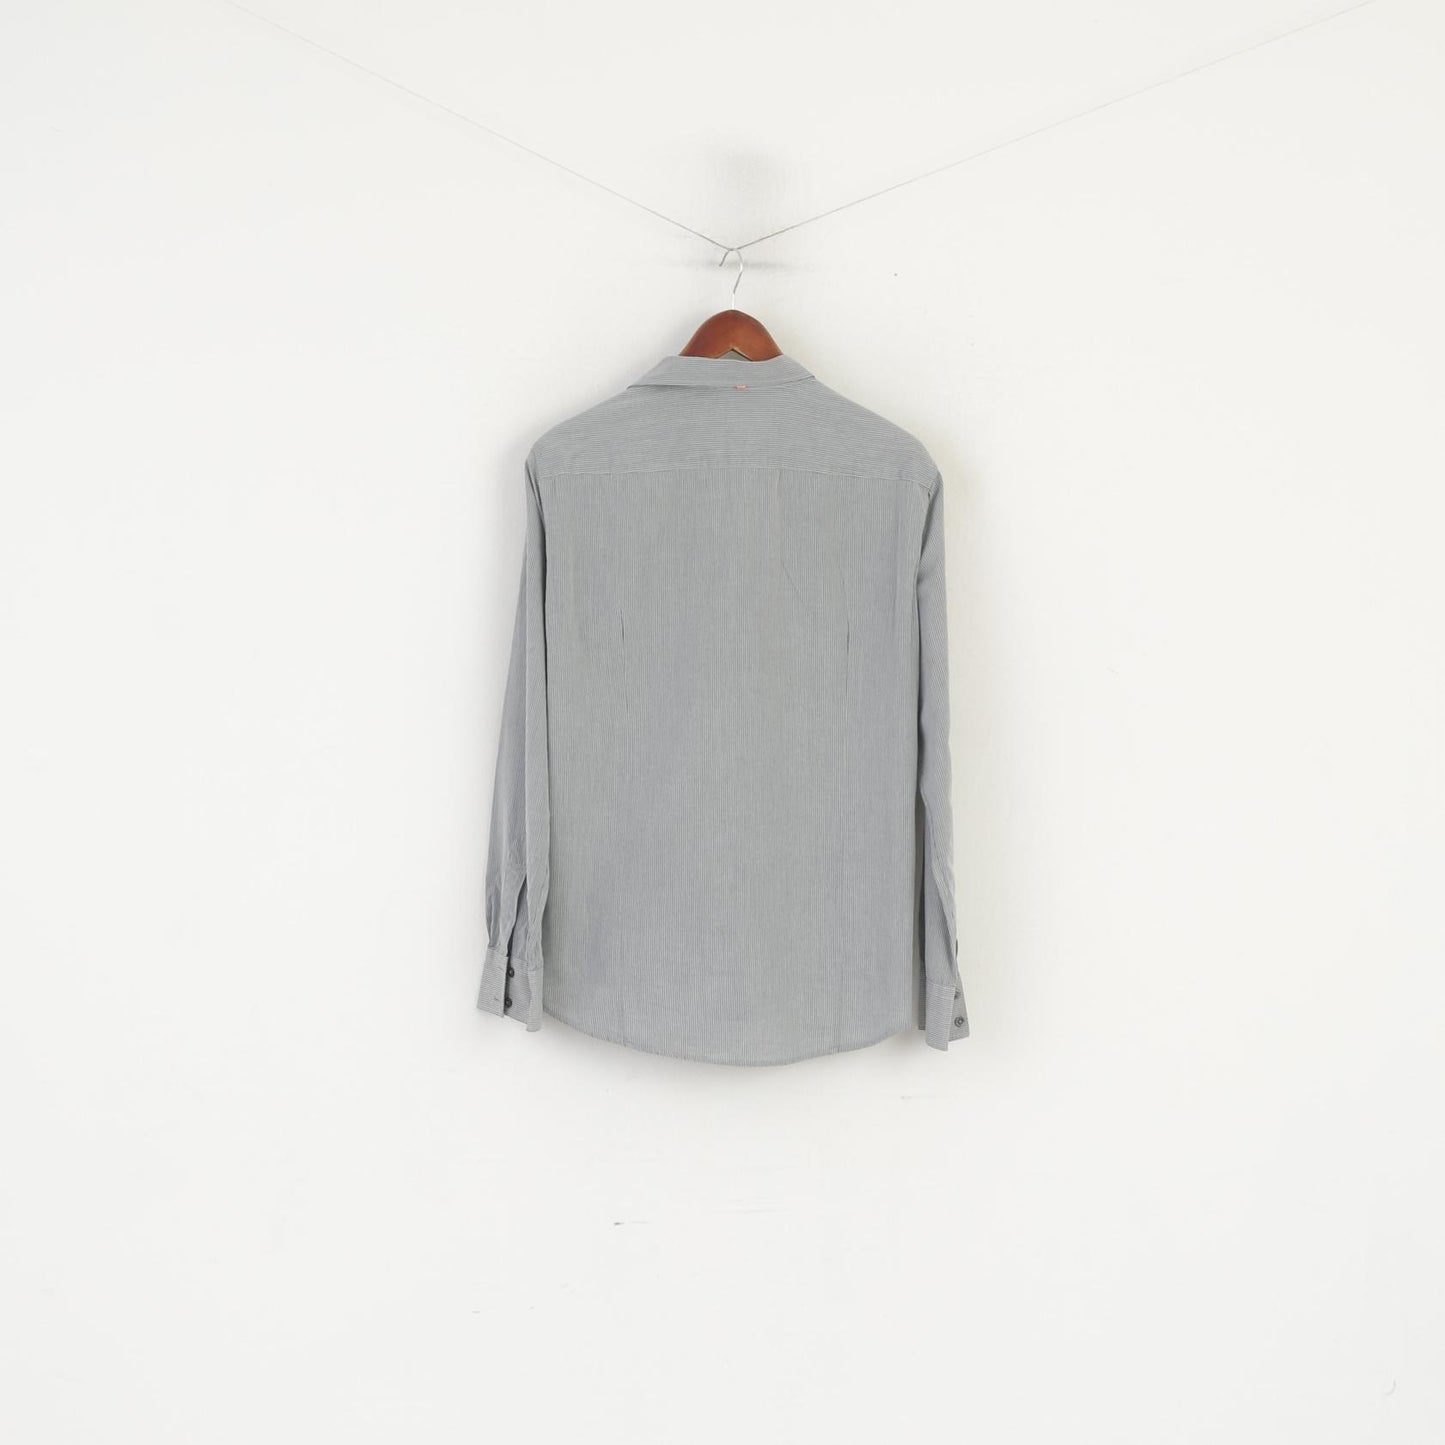 Hugo Boss Men L (M) Casual Shirt Grey Striped Cotton Hidden Buttons Long Sleeve Top